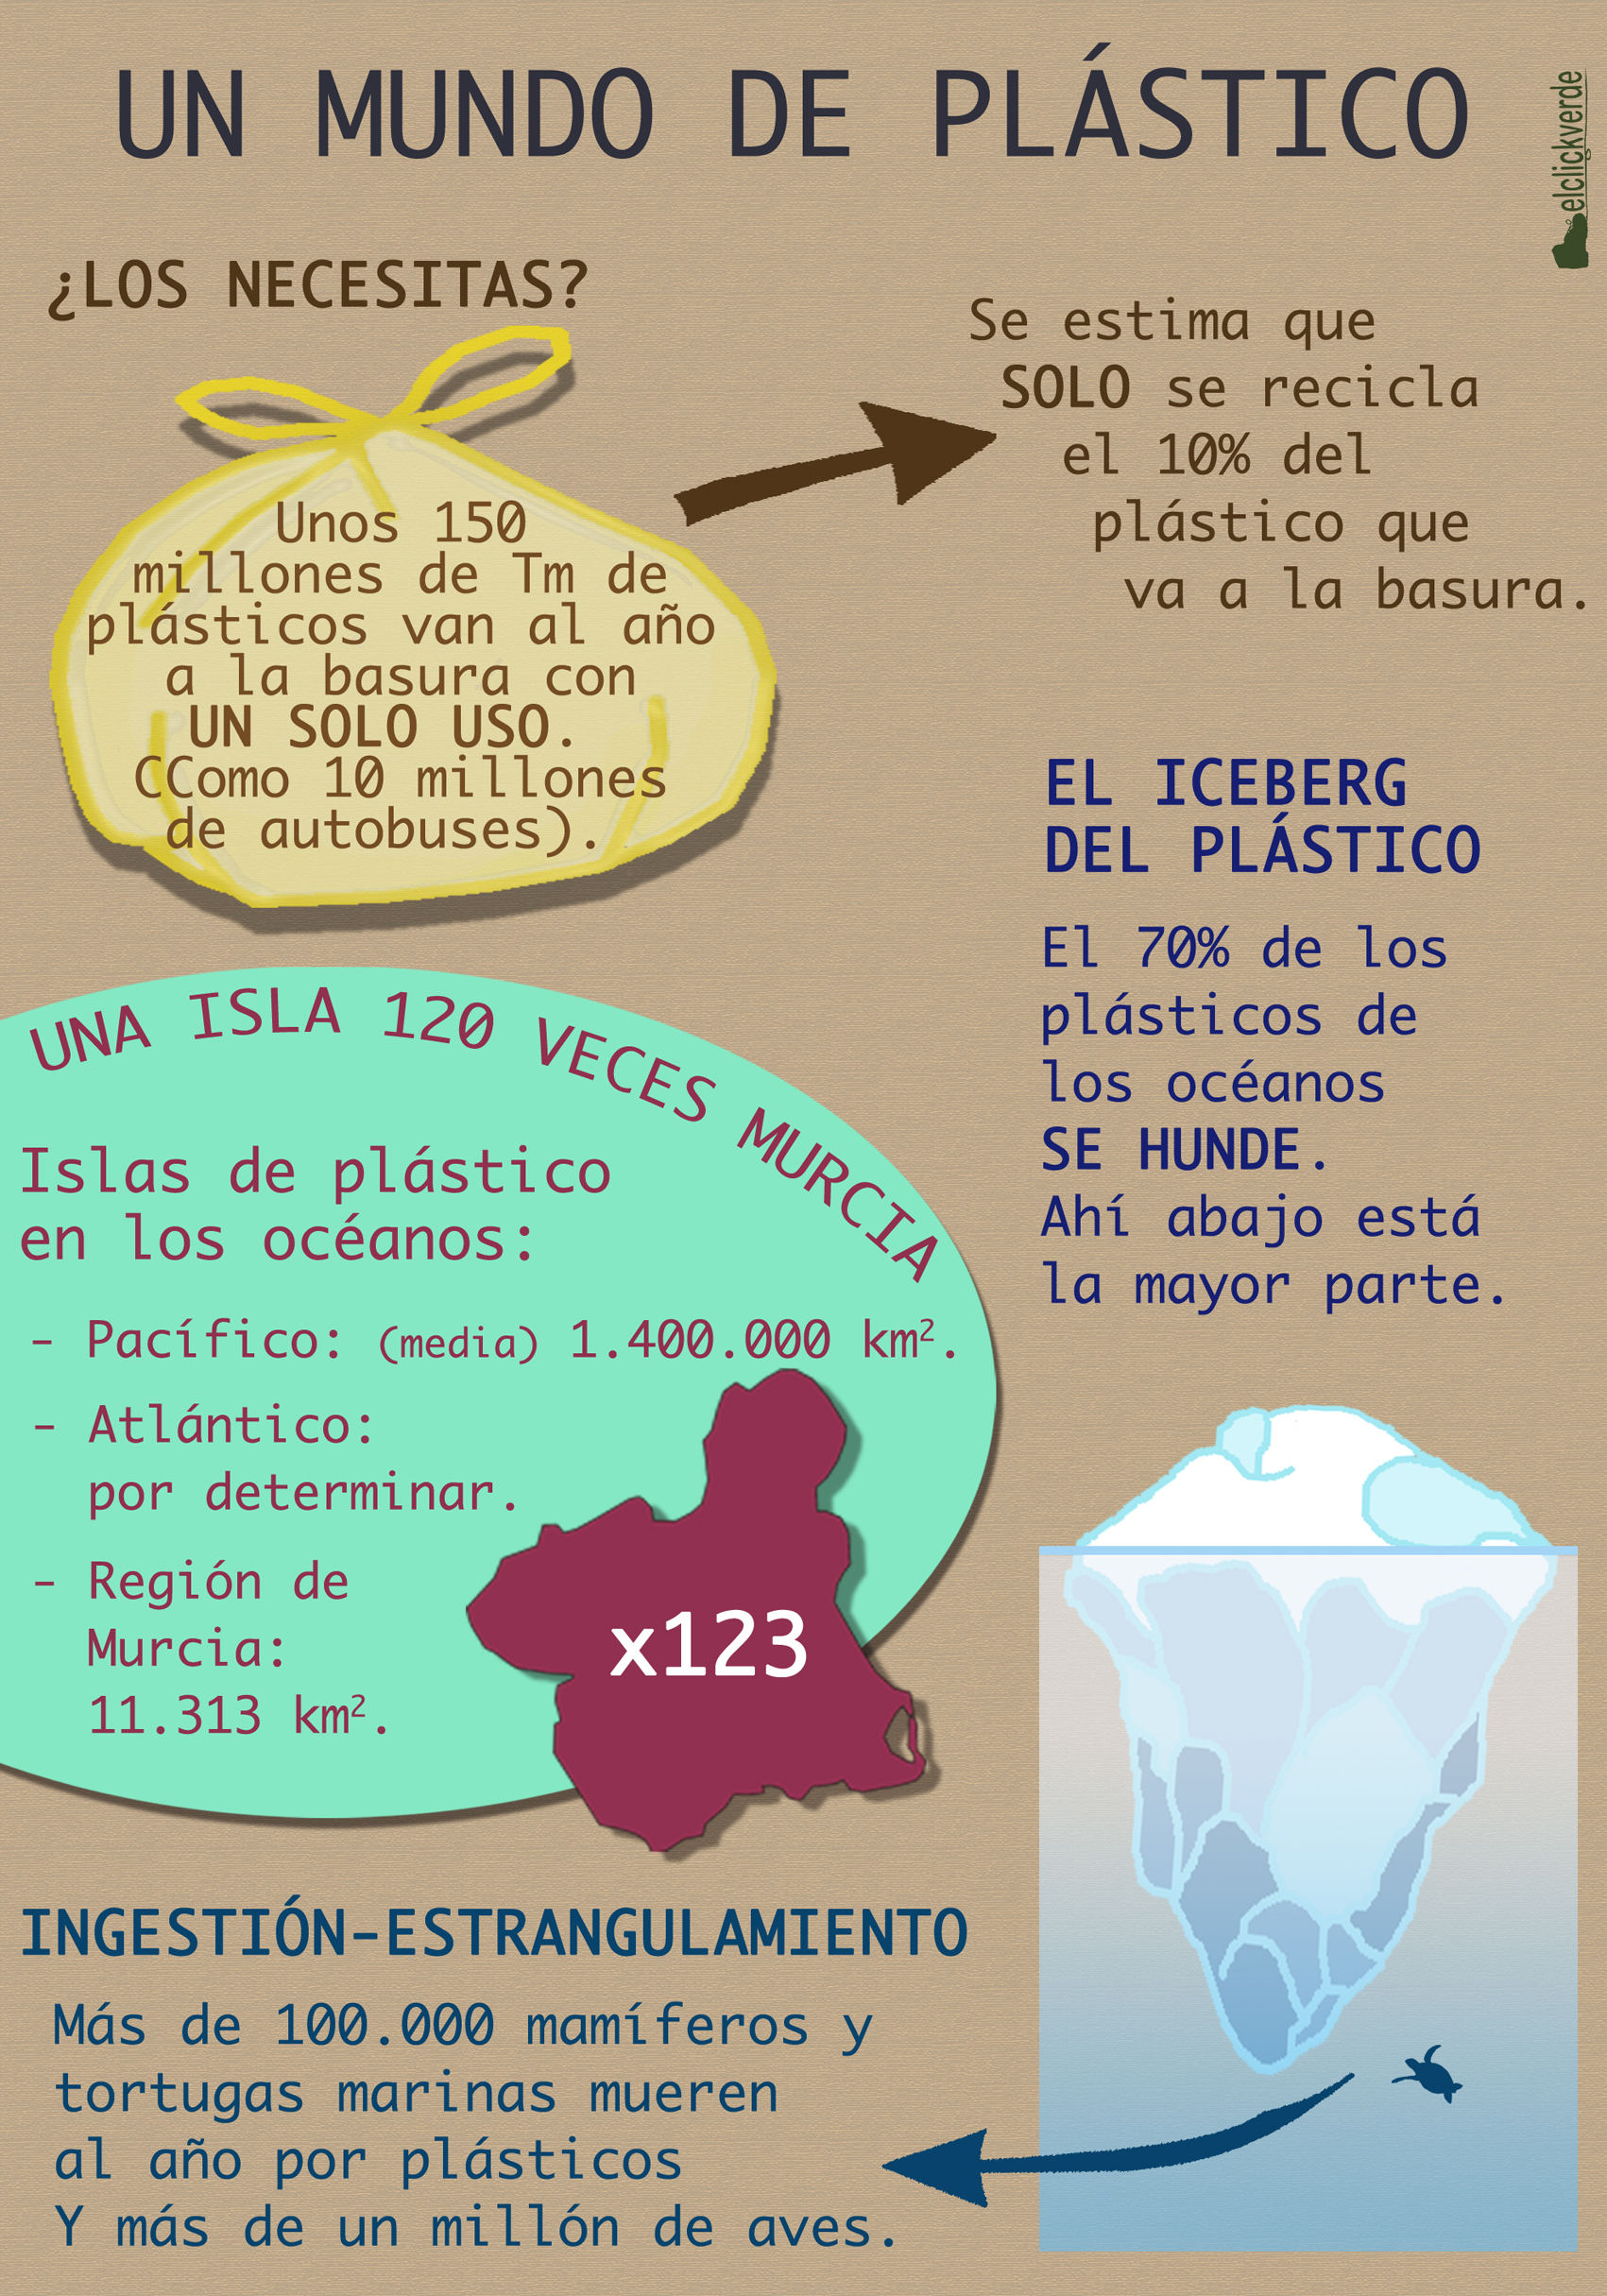 Infografía que muestra apenas una parte de los inconvenientes del mal uso y gestión del pástico.